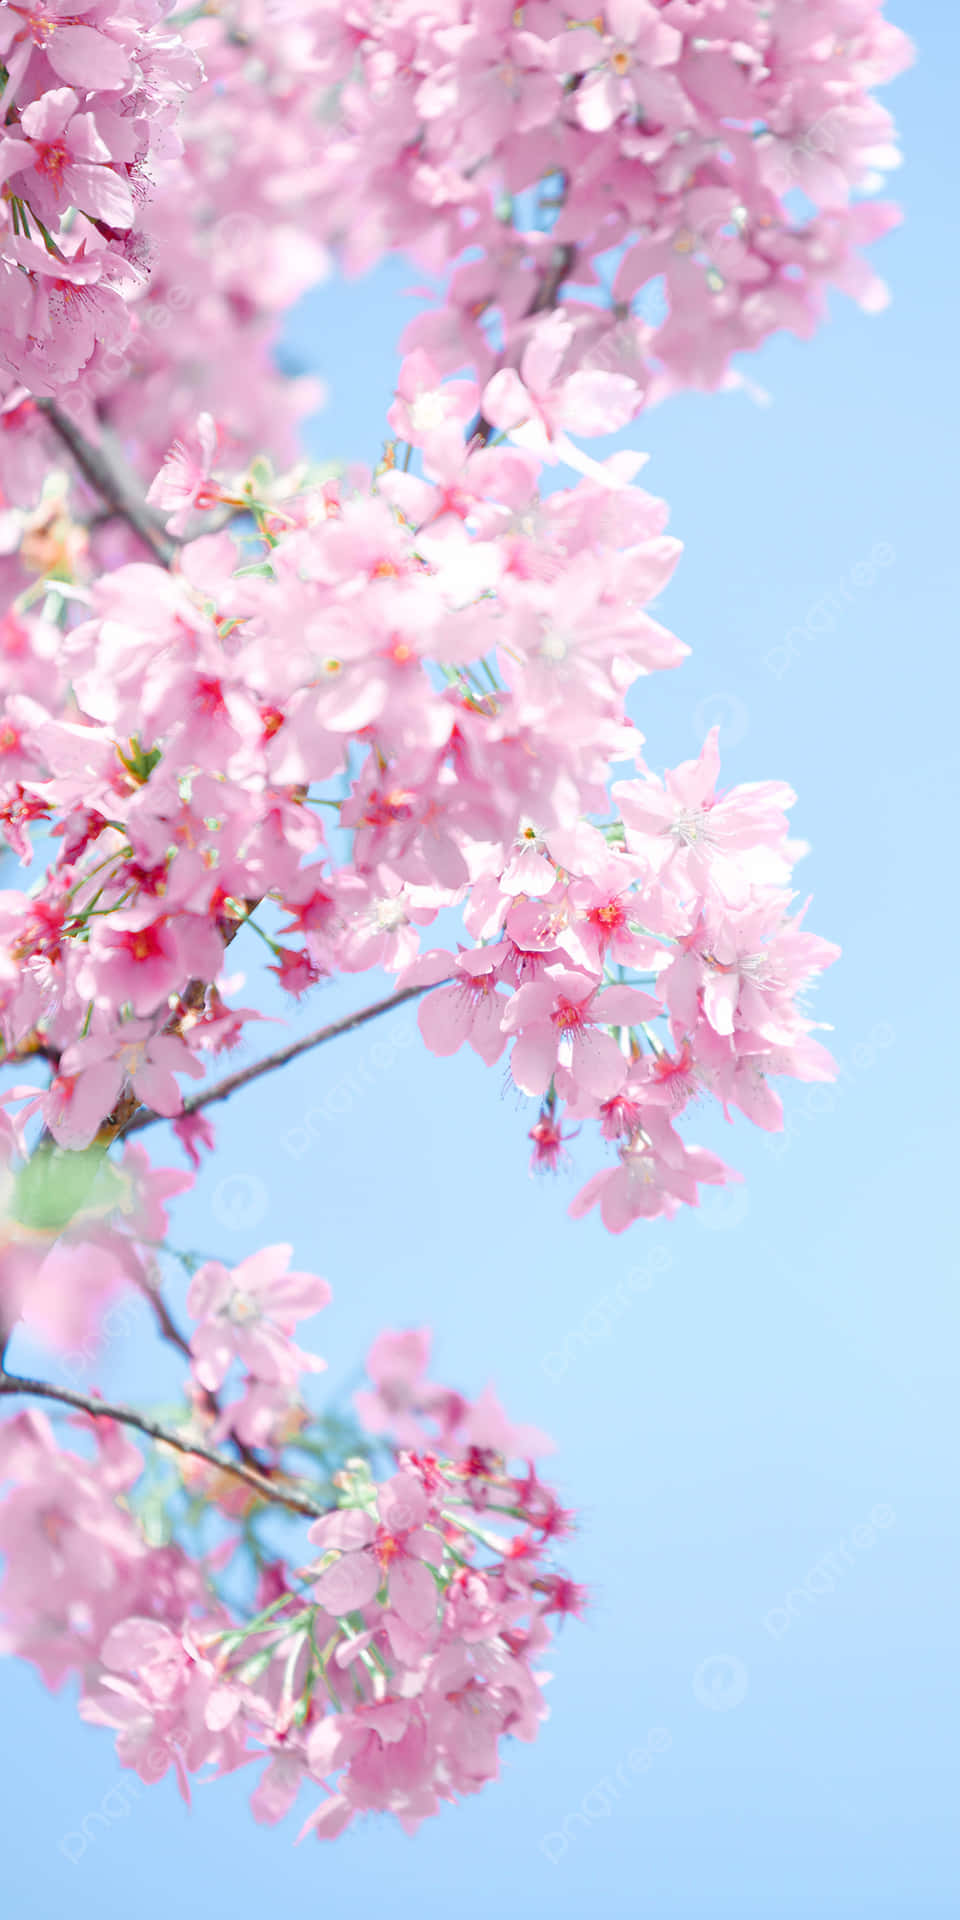 Nyd et afslappende eftermiddag under lyserøde kirsebærblomster Wallpaper